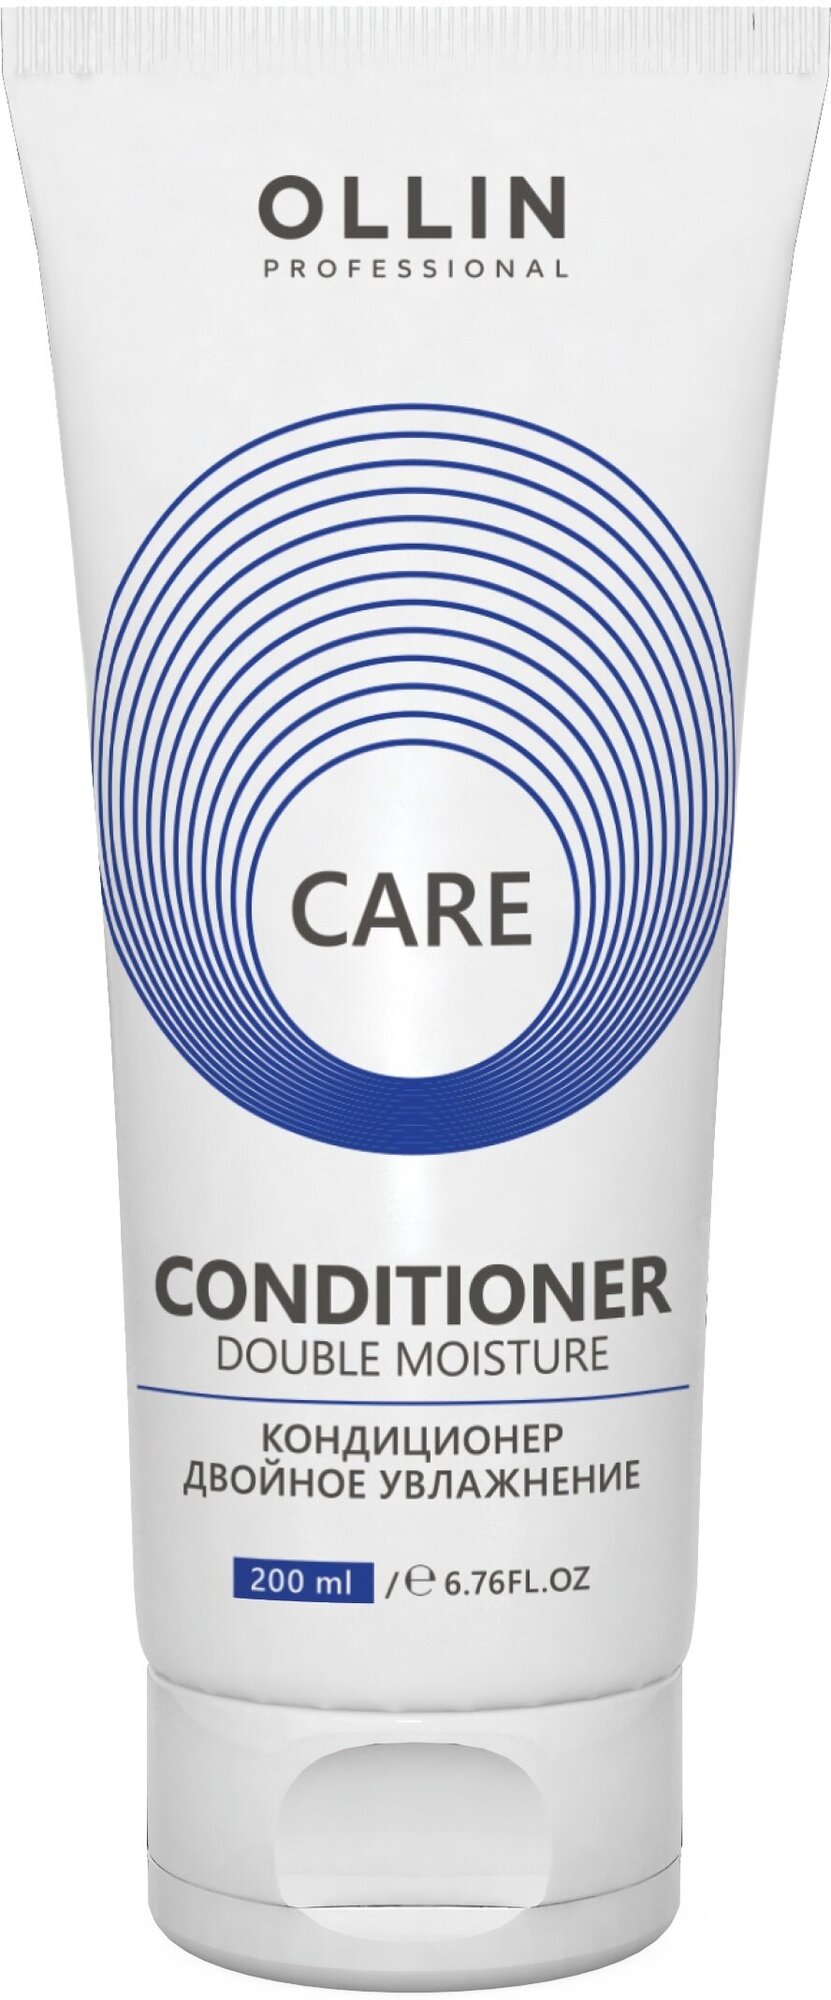 Кондиционер CARE для увлажнения и питания OLLIN PROFESSIONAL double moisture 200 мл